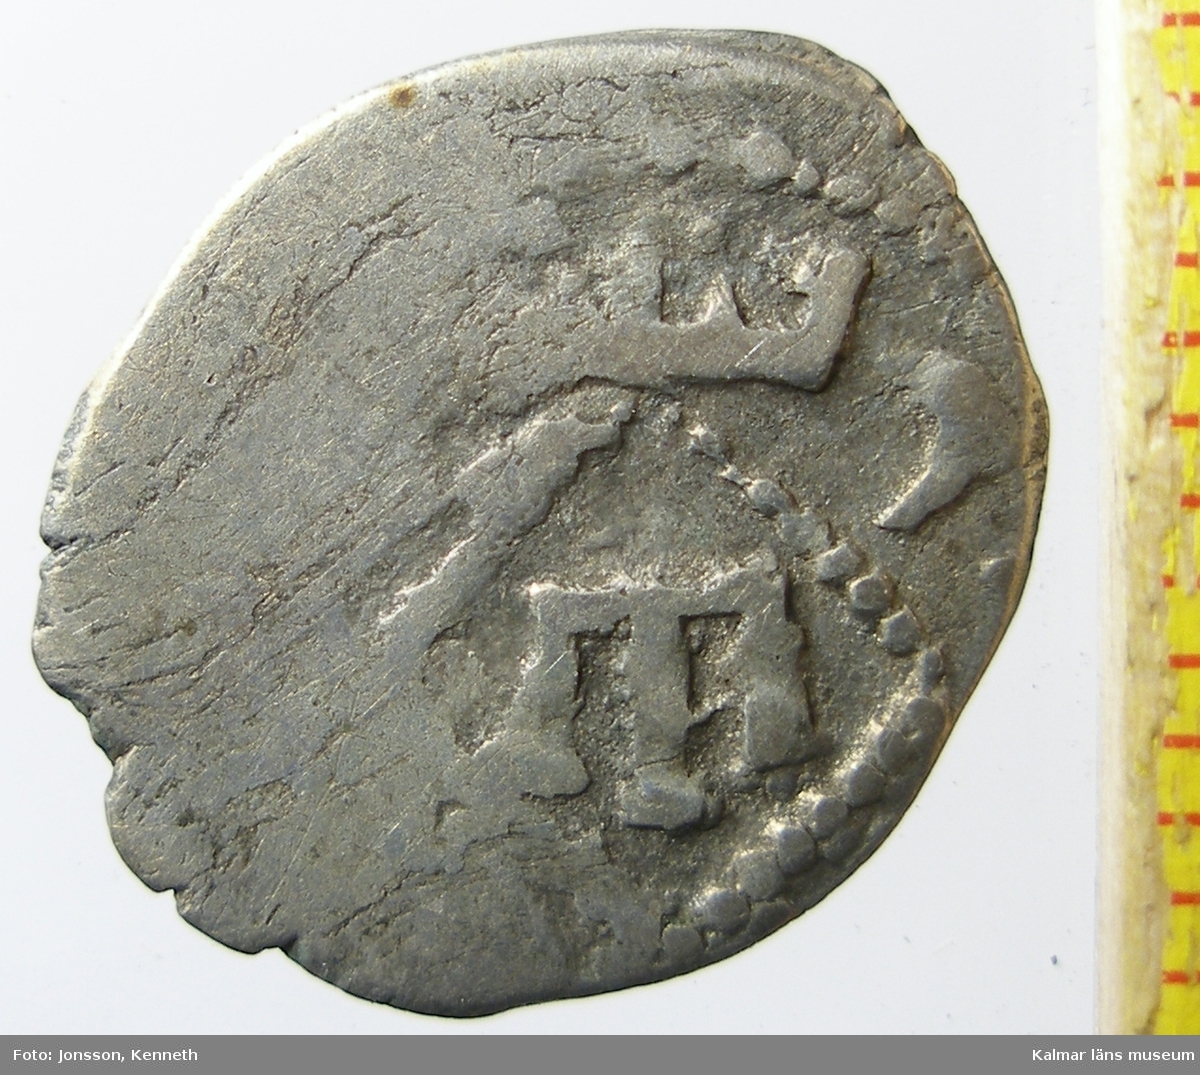 KLM 24882:1 Mynt, av silver. Korsfararmynt. Medeltid. Kaffa, asper 1300-tal. Schlumberger pl. XVII:31. 
Präglat i Kaffa (på Krim) på 1300-talet. Valören är asper. Kaffa var då en koloni till Genua.